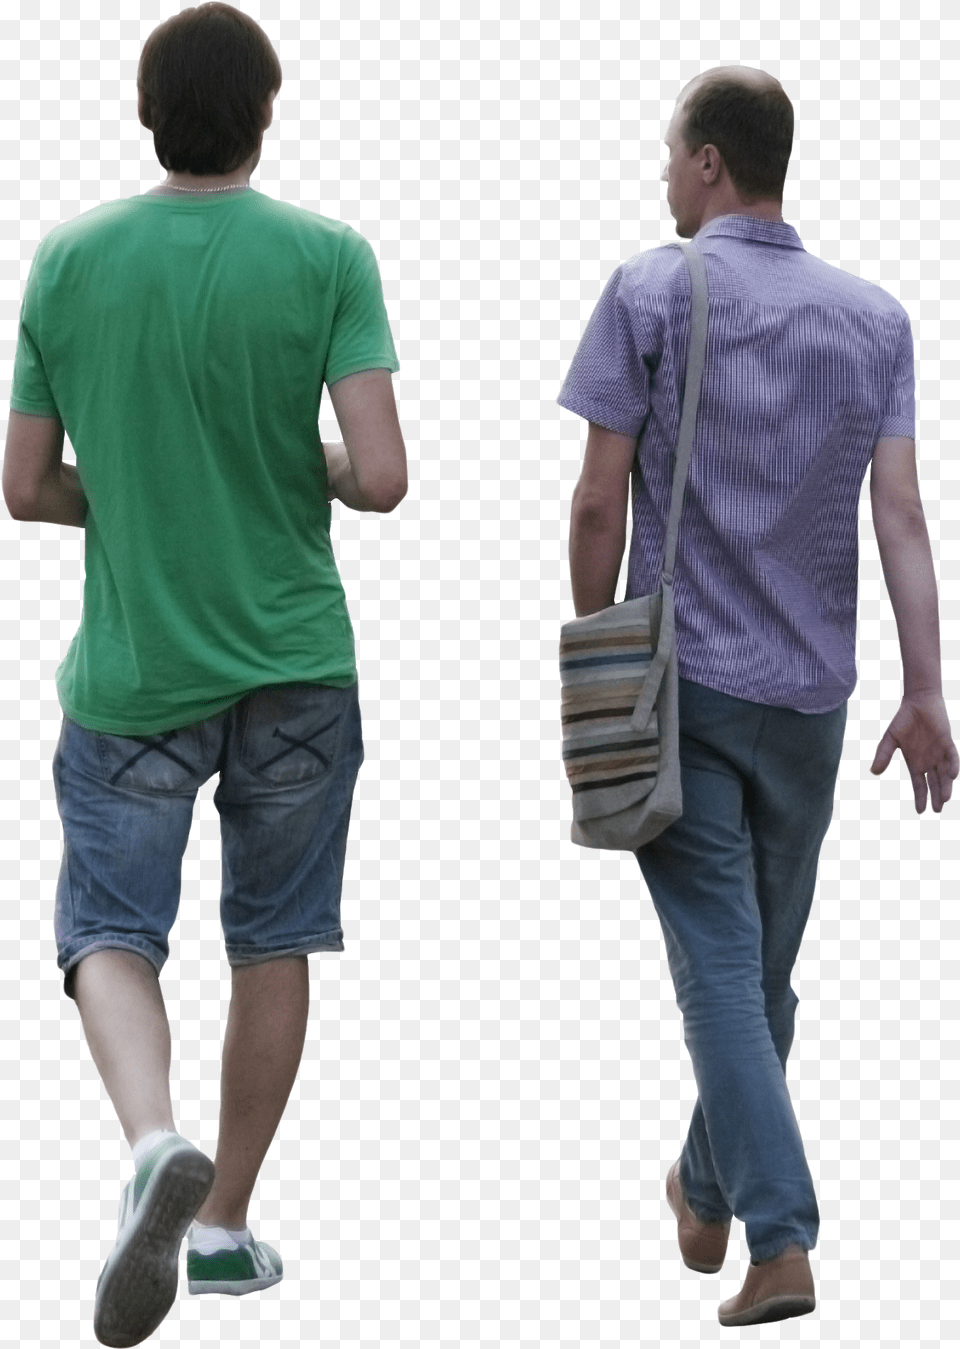 Two Men Walking People Walking, Pants, Clothing, Person, Shorts Free Transparent Png